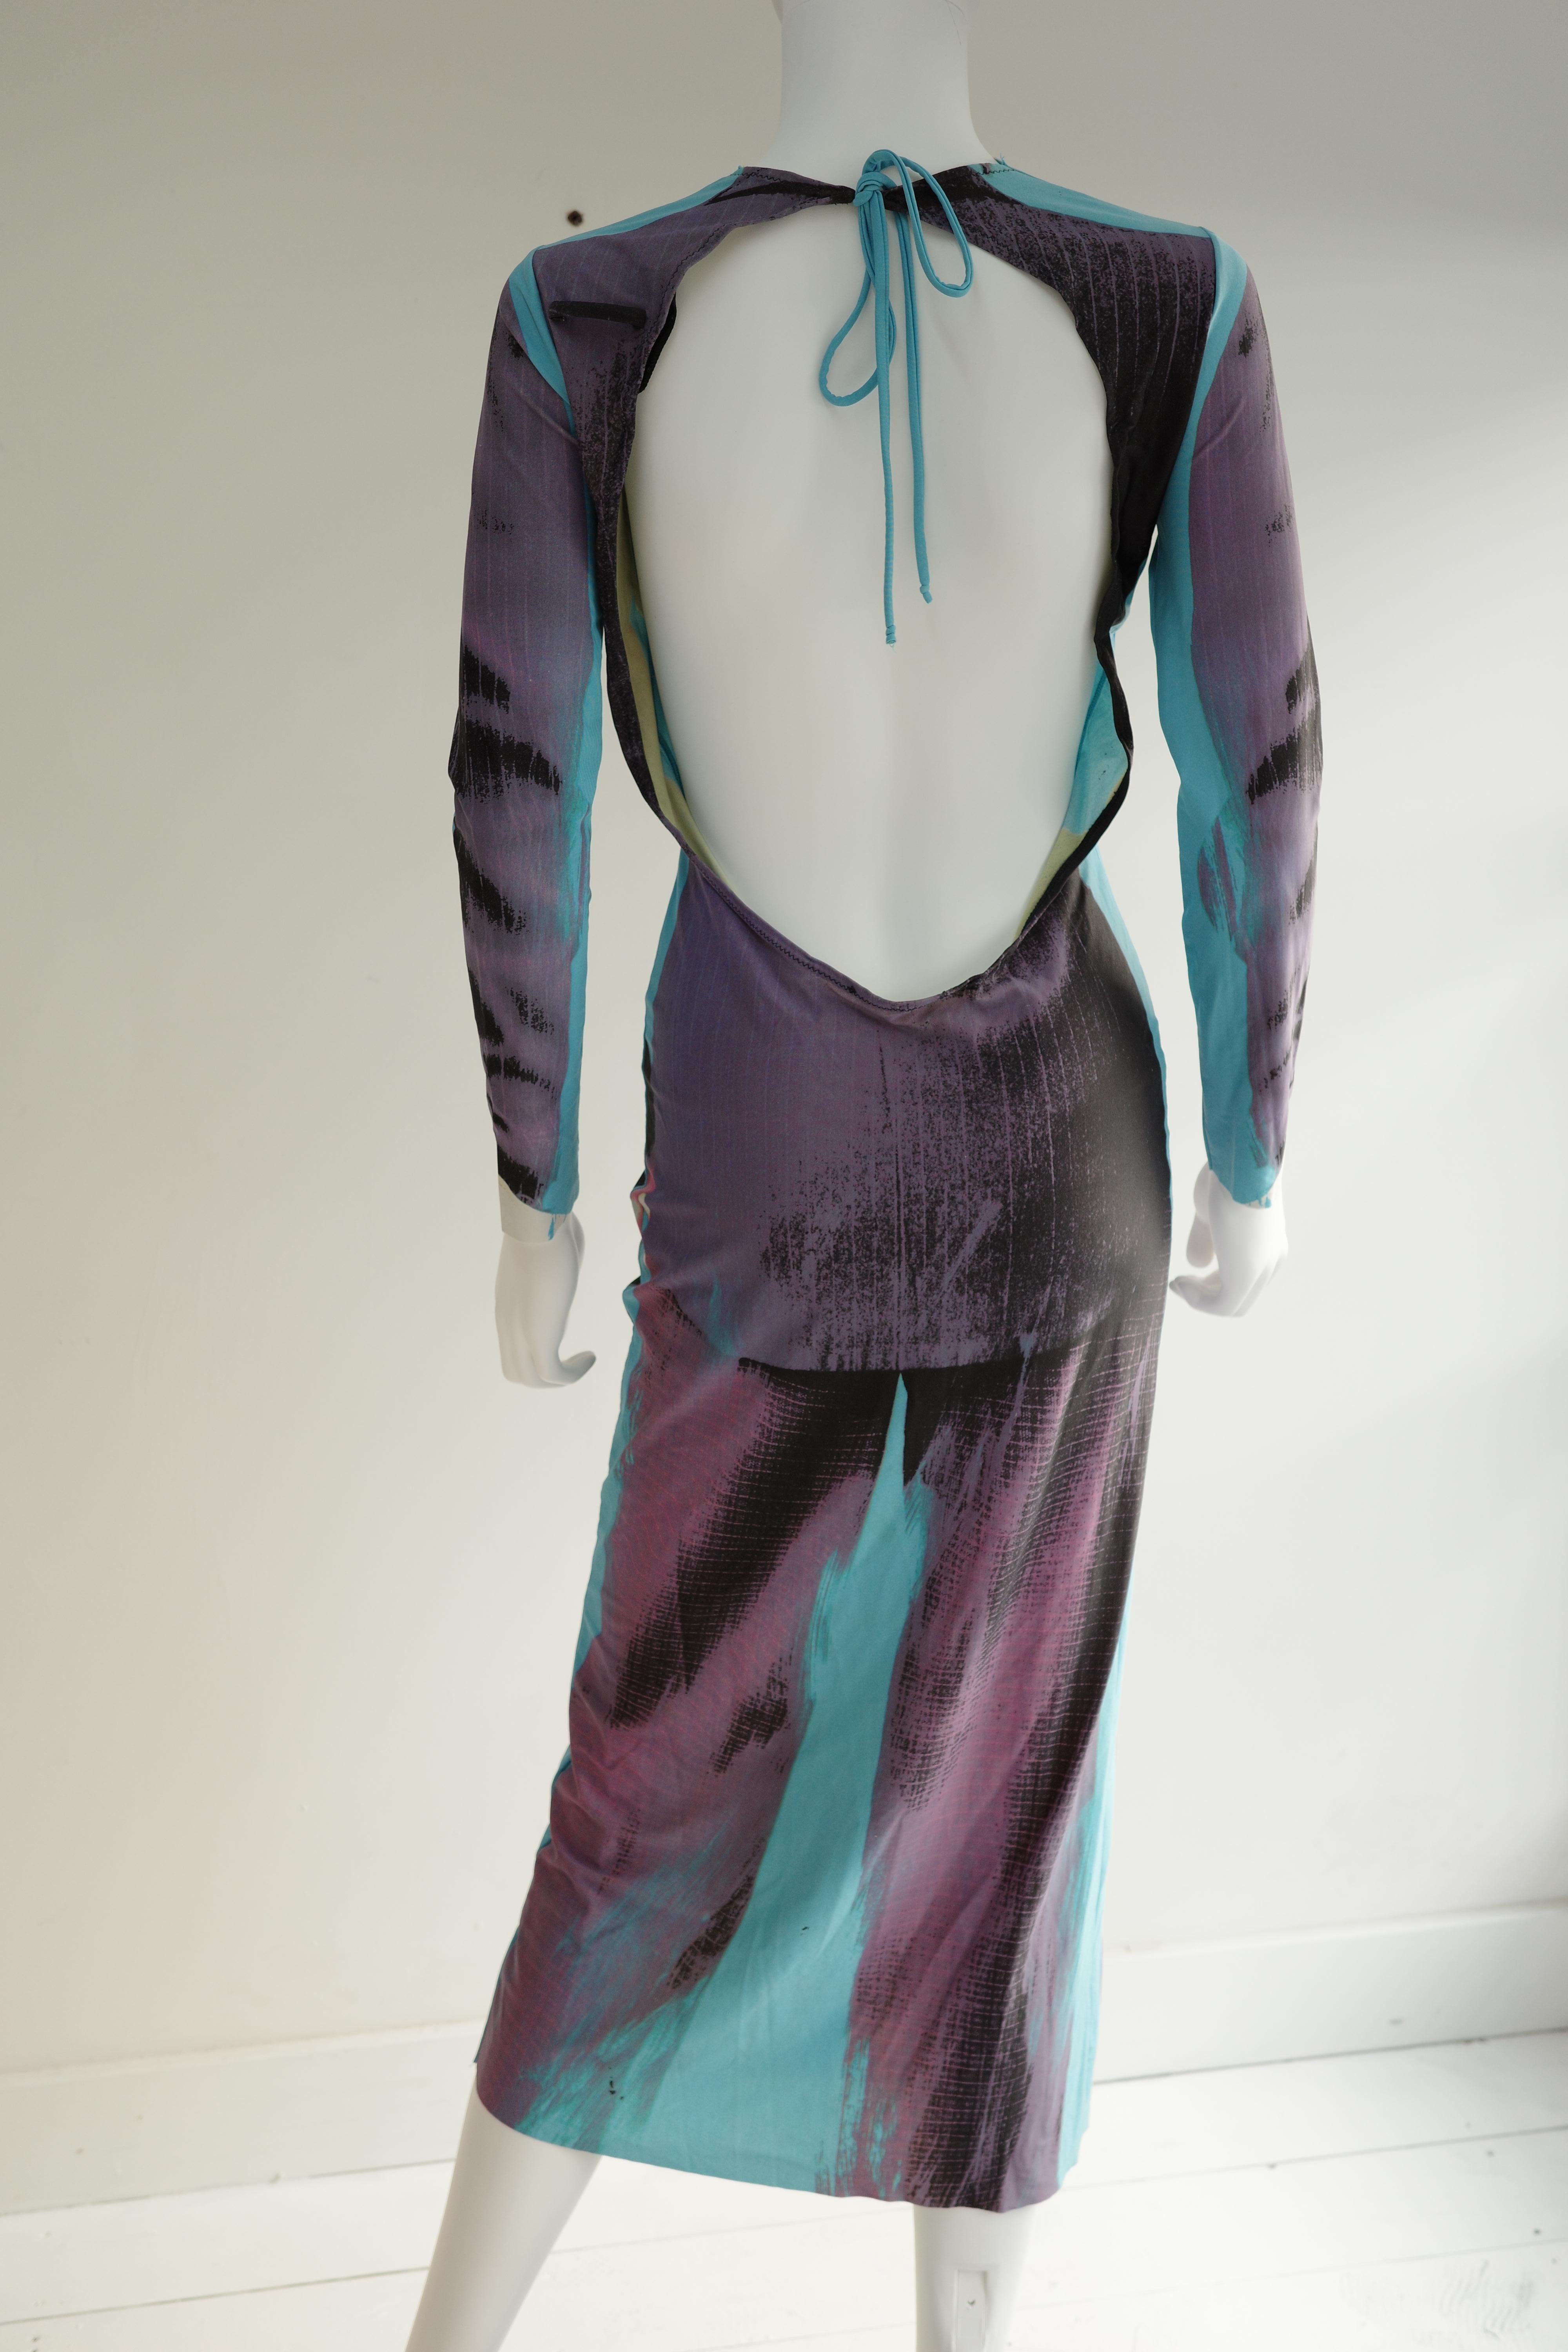 Black Jean Paul Gaultier A/W 1996 Tuxedo Print Dress  For Sale